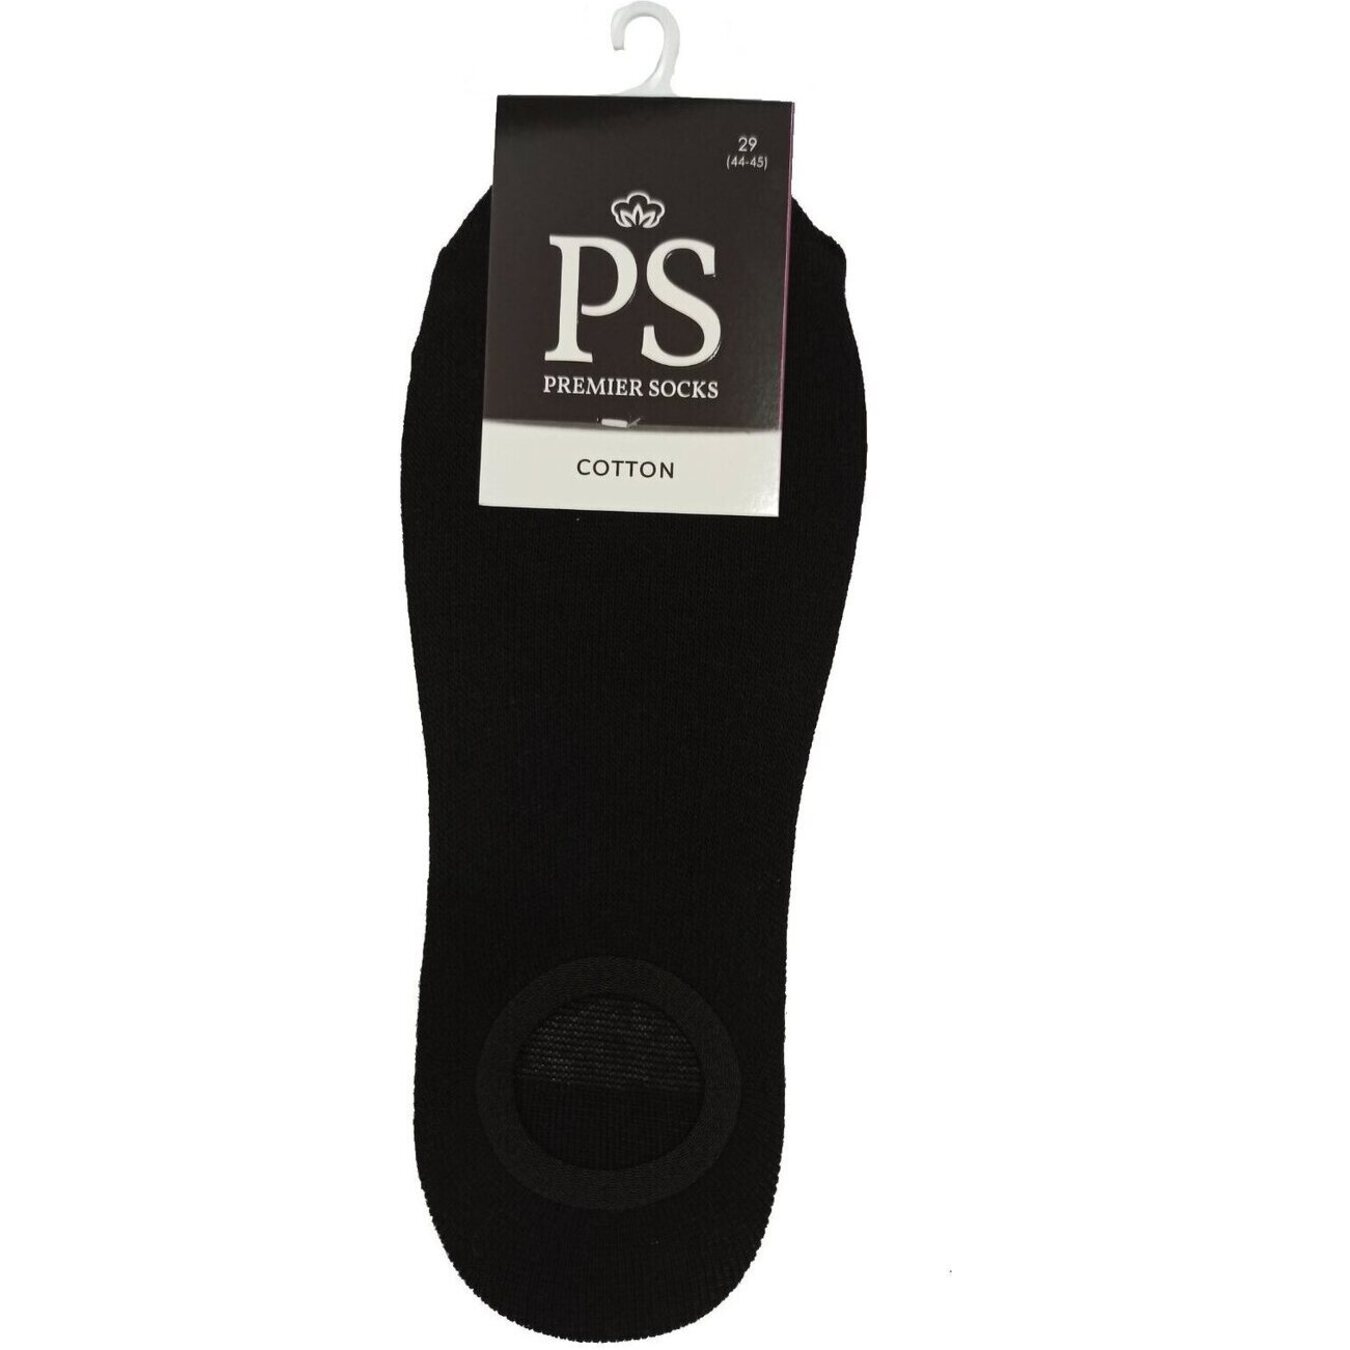 Premier Socks men's ring followers size 29 black